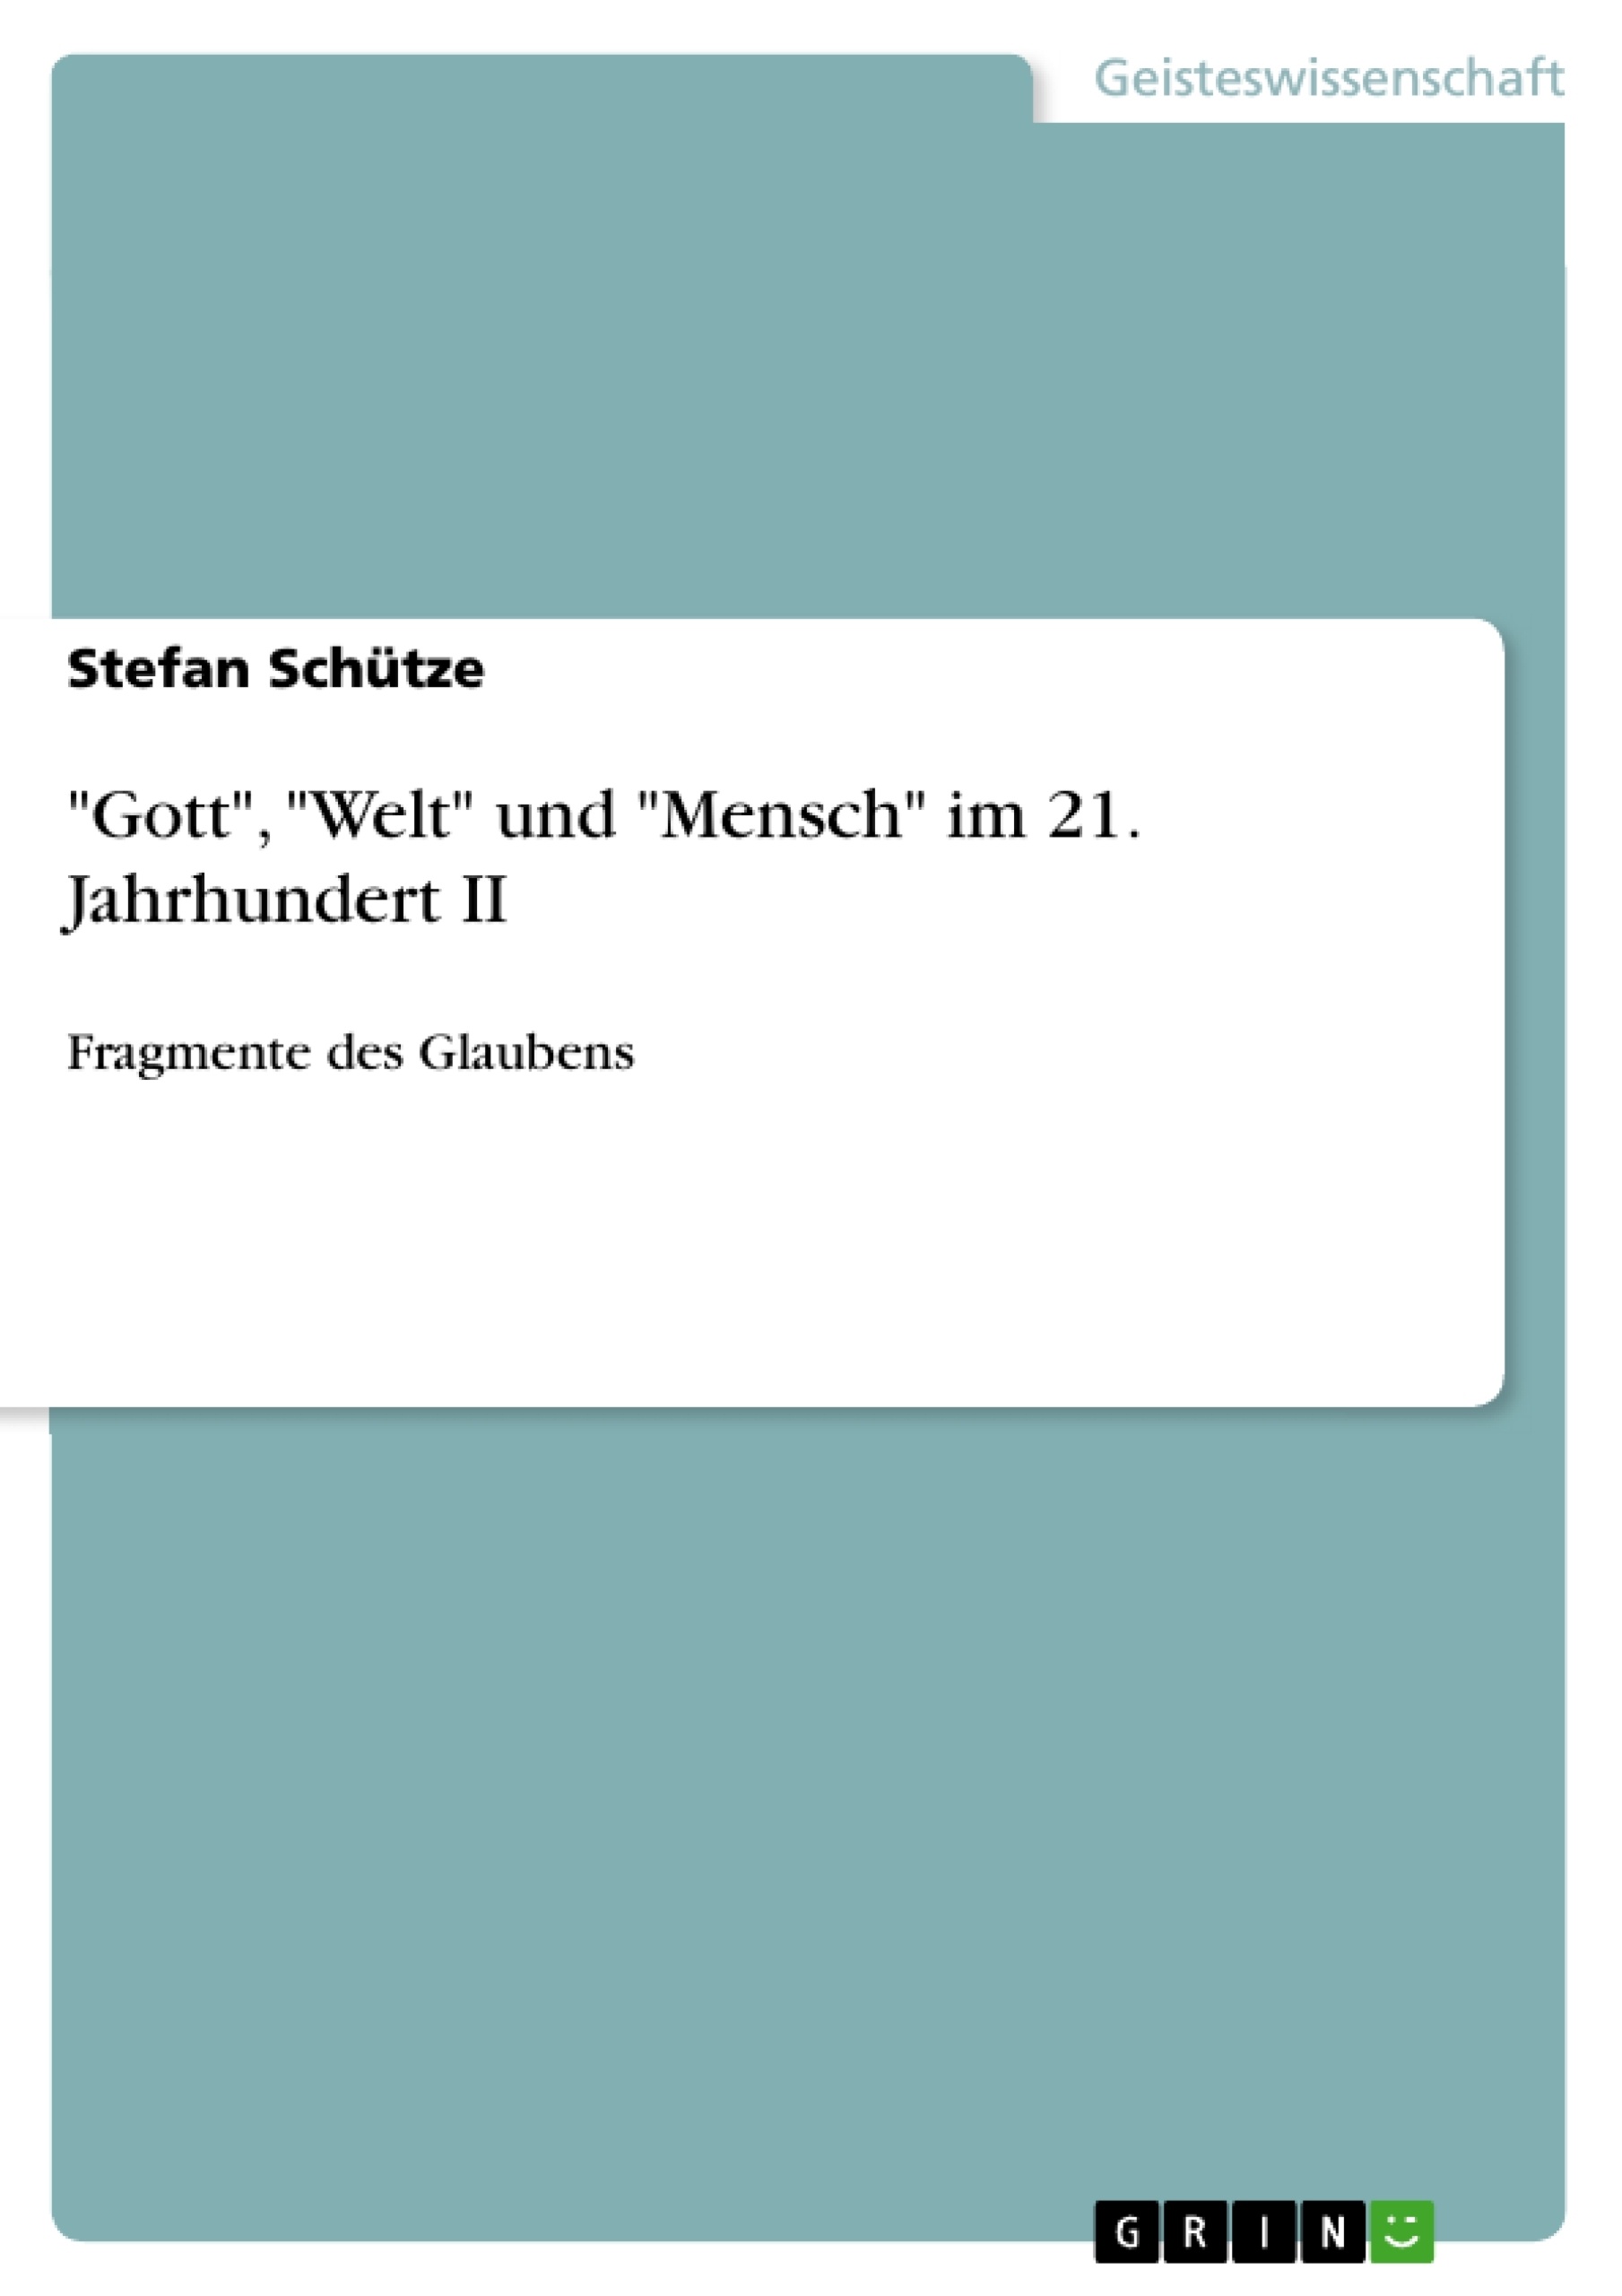 Título: "Gott", "Welt" und "Mensch" im 21. Jahrhundert II